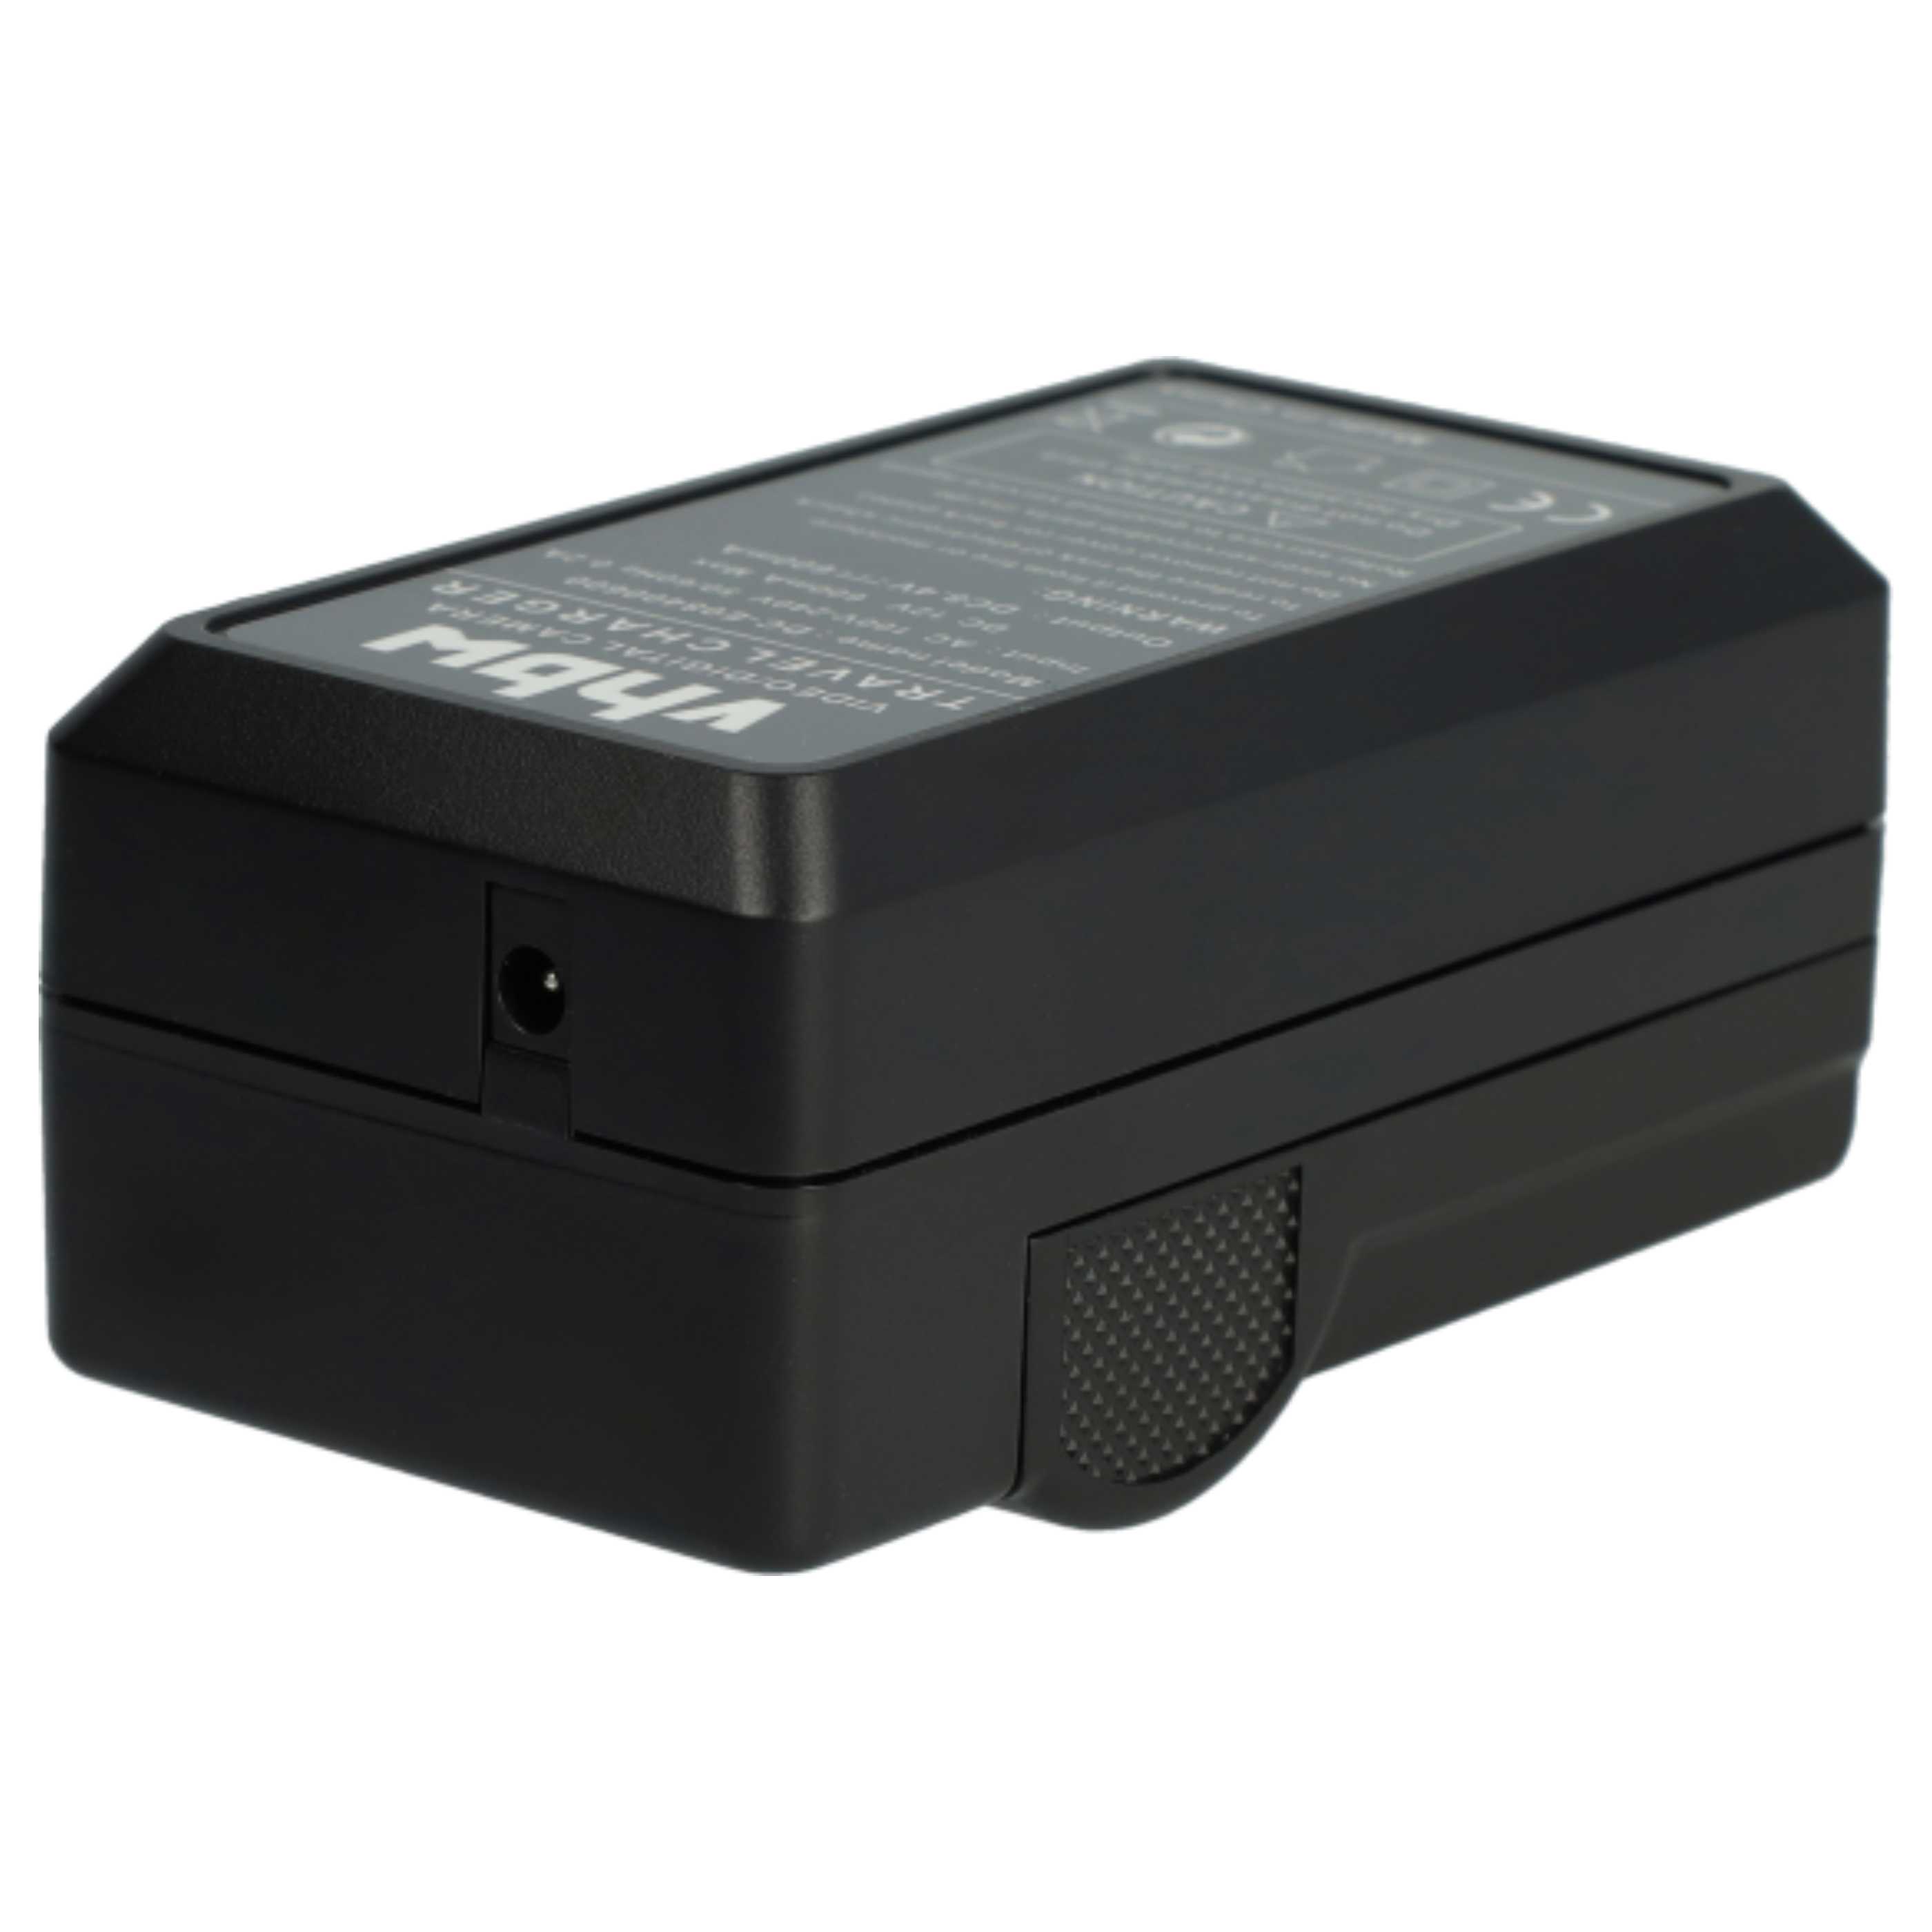 Akku Ladegerät passend für Lumix DMC-FZ1 Kamera u.a. - 0,6 A, 8,4 V